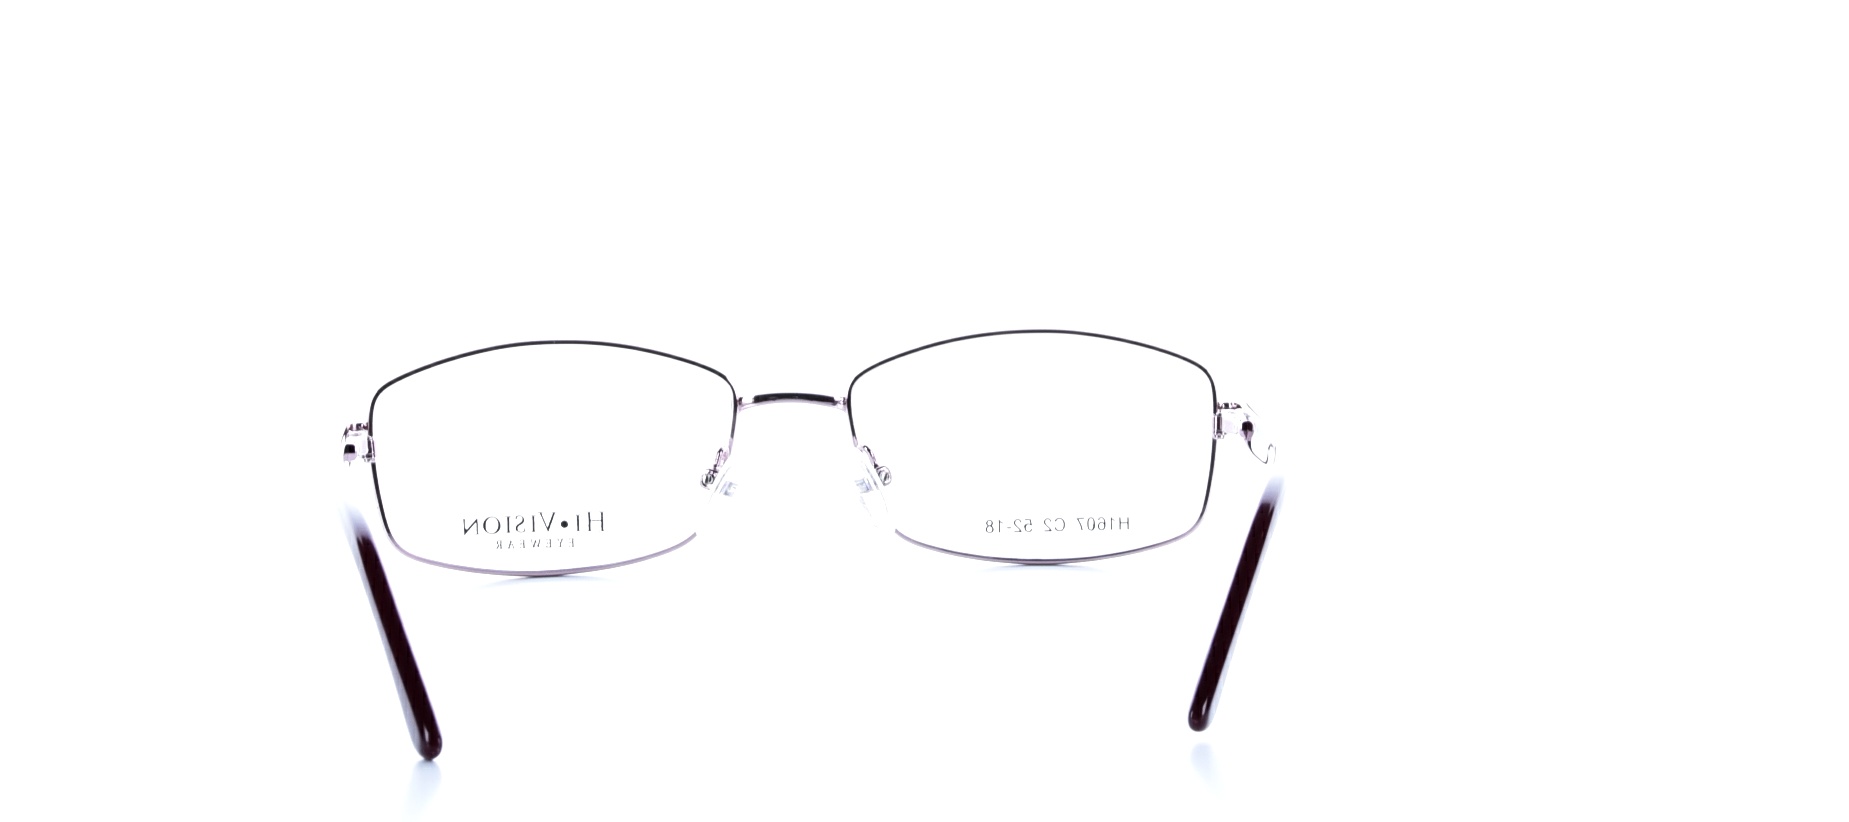 Rama ochelari vedere Hivision